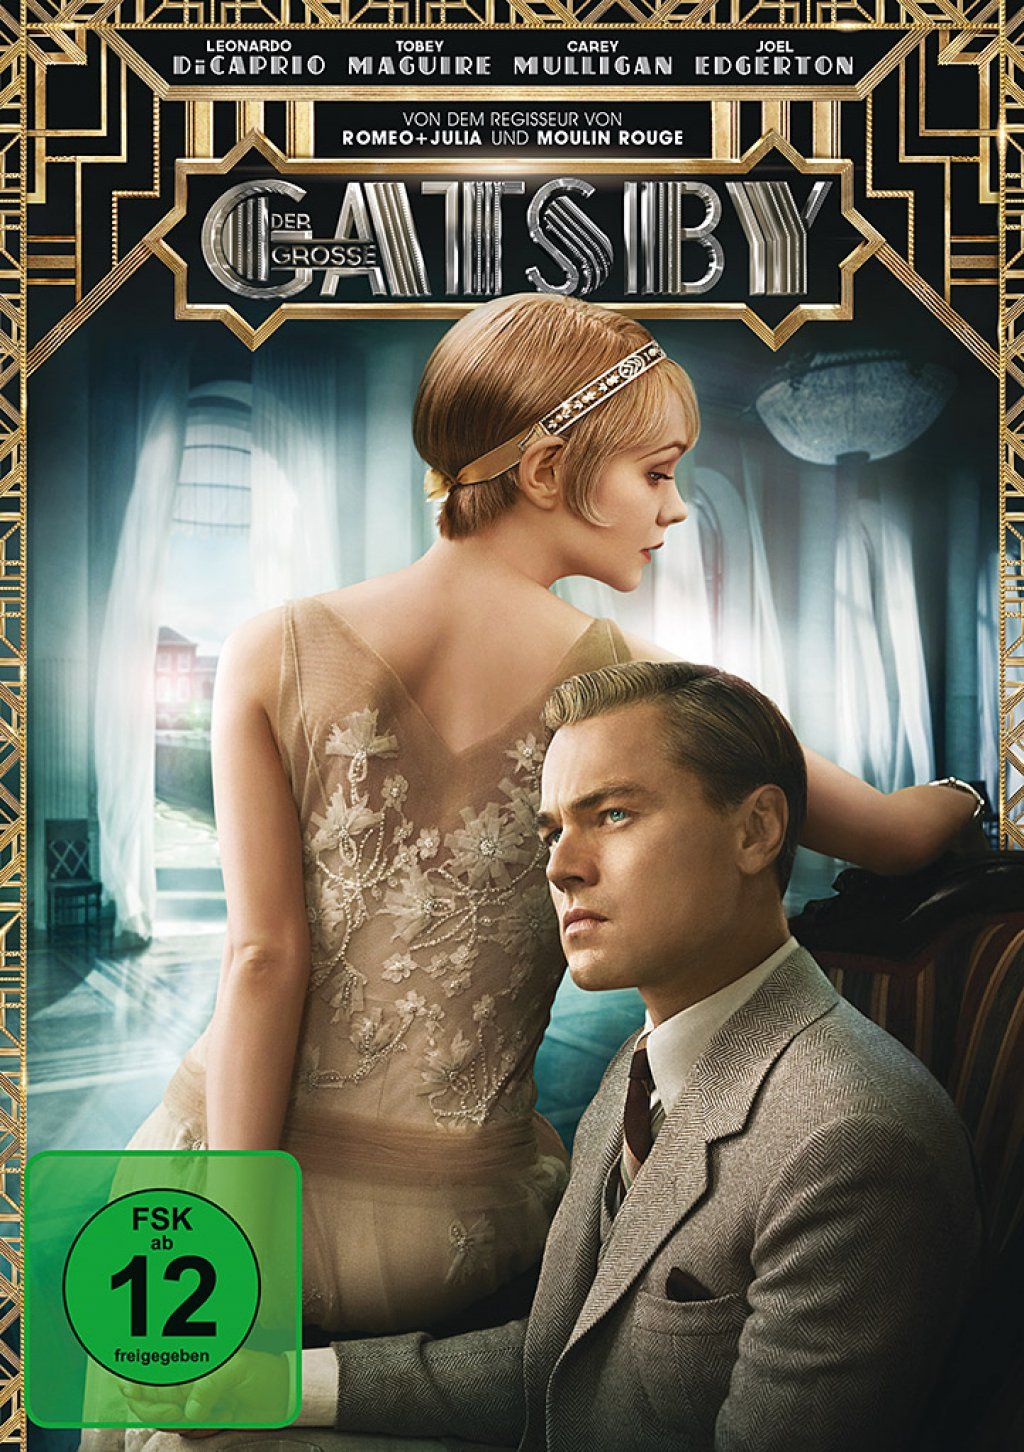 Grosse Gatsby, Der (2013)